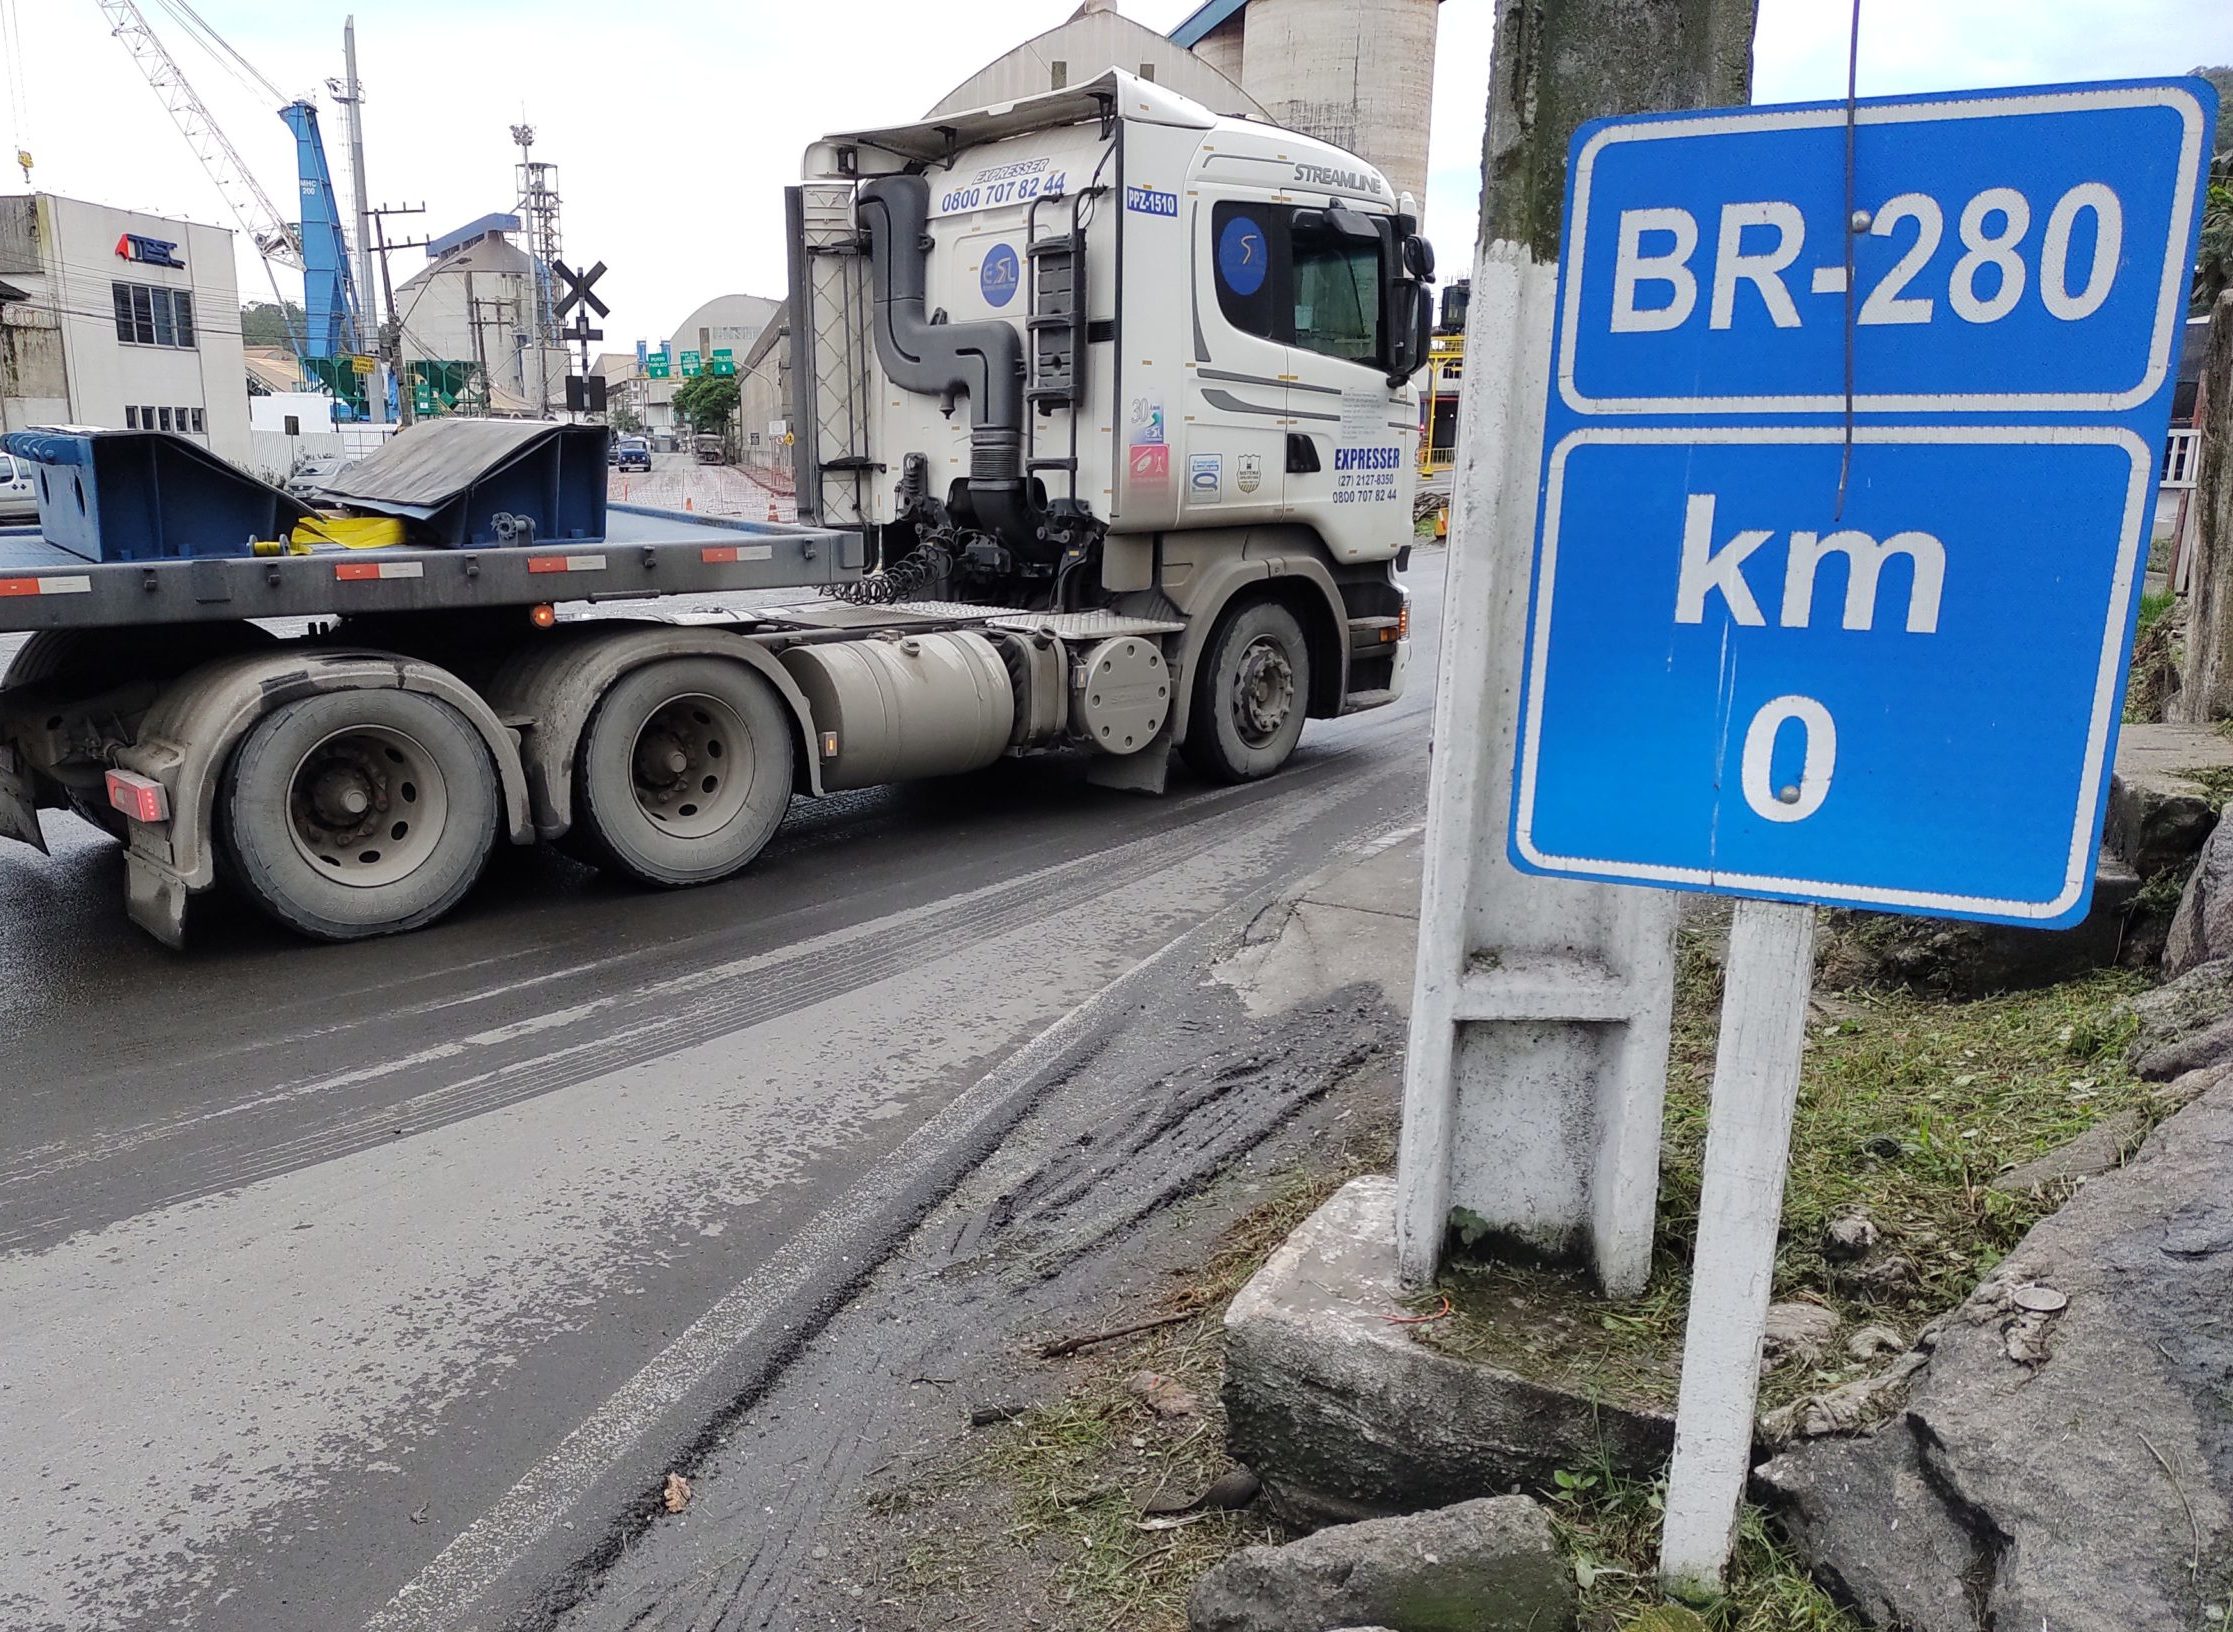 BR-280: Uma rodovia cheia de desafios na modernização